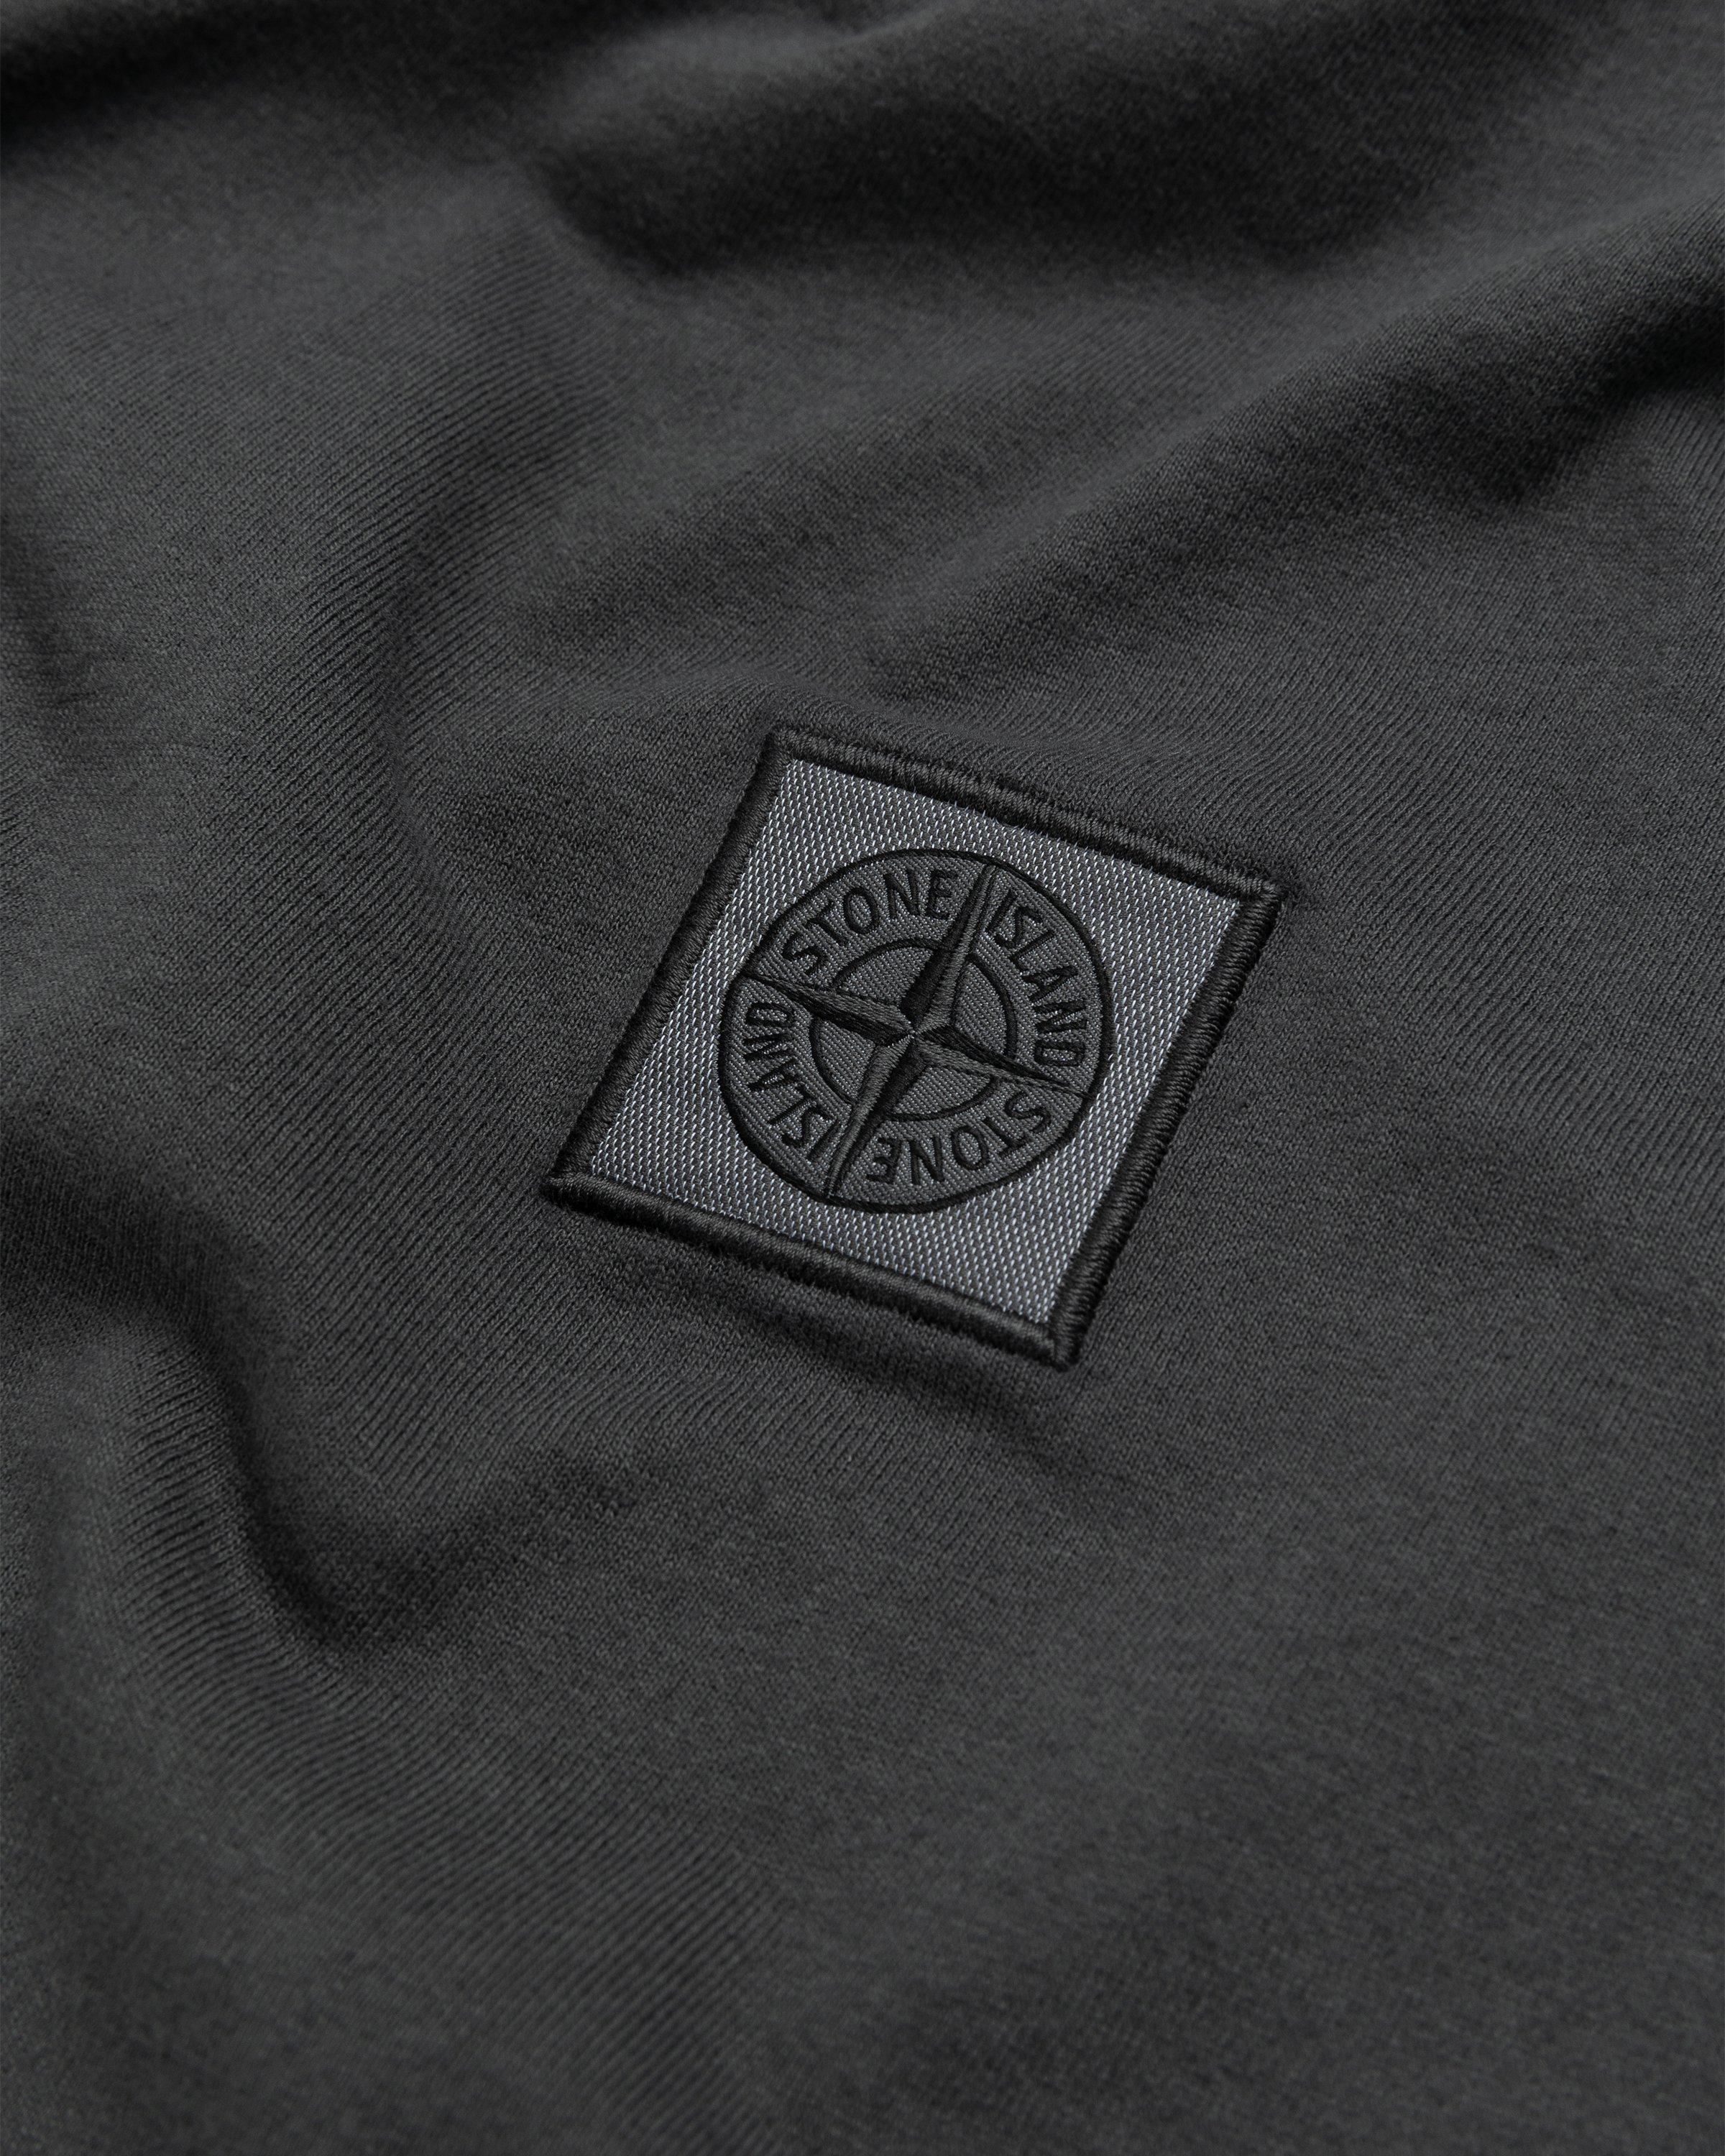 Stone Island - T-Shirt Charcoal 23757 - Clothing - Grey - Image 5